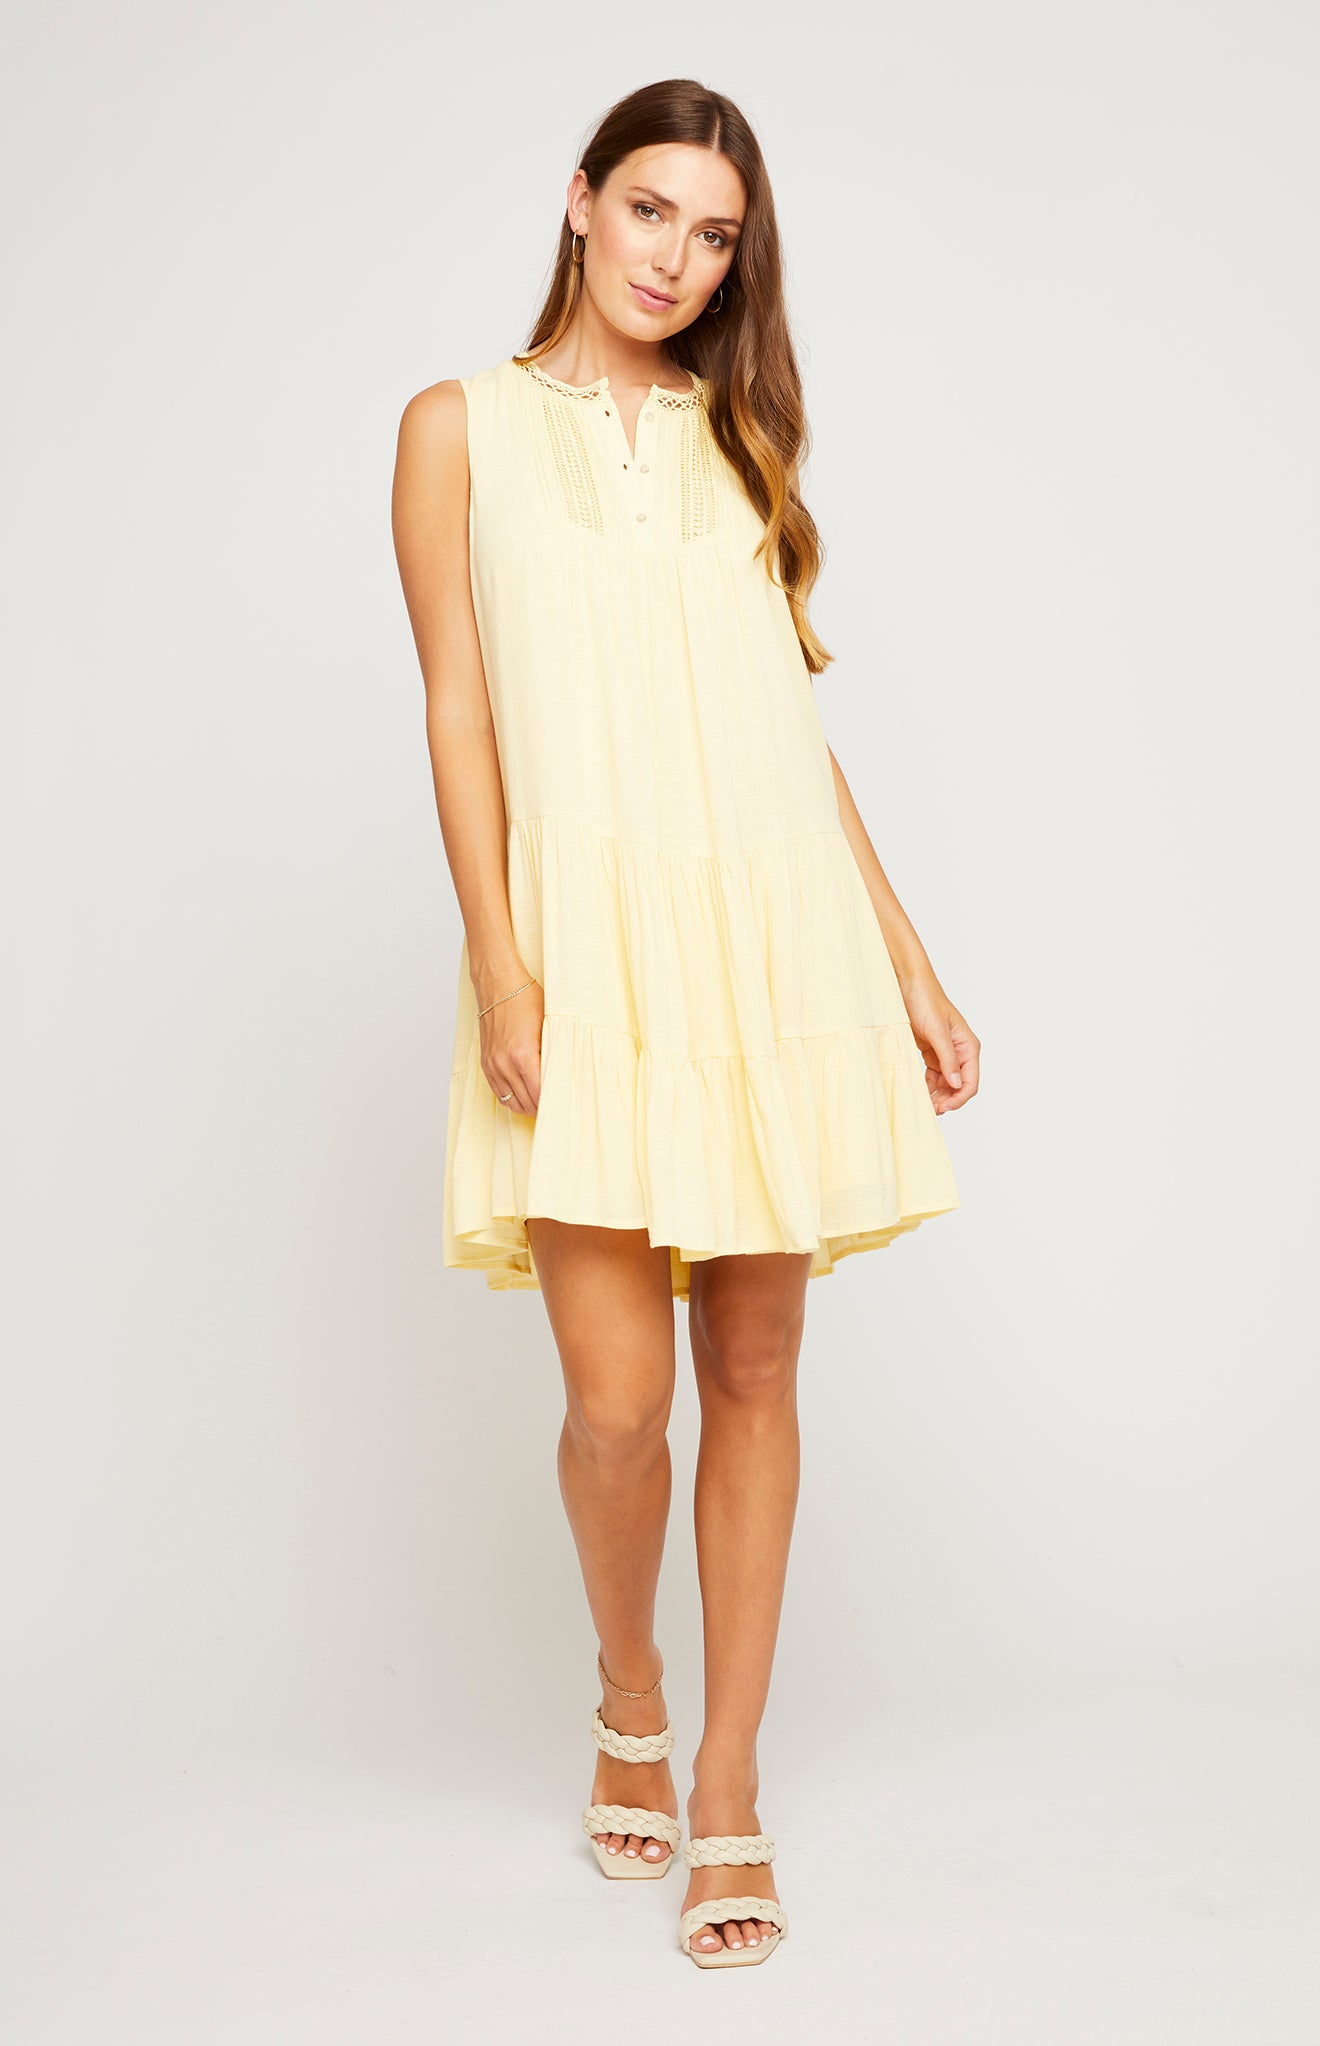 Kinley Dress - Sunlight - Gentle Fawn - SALE